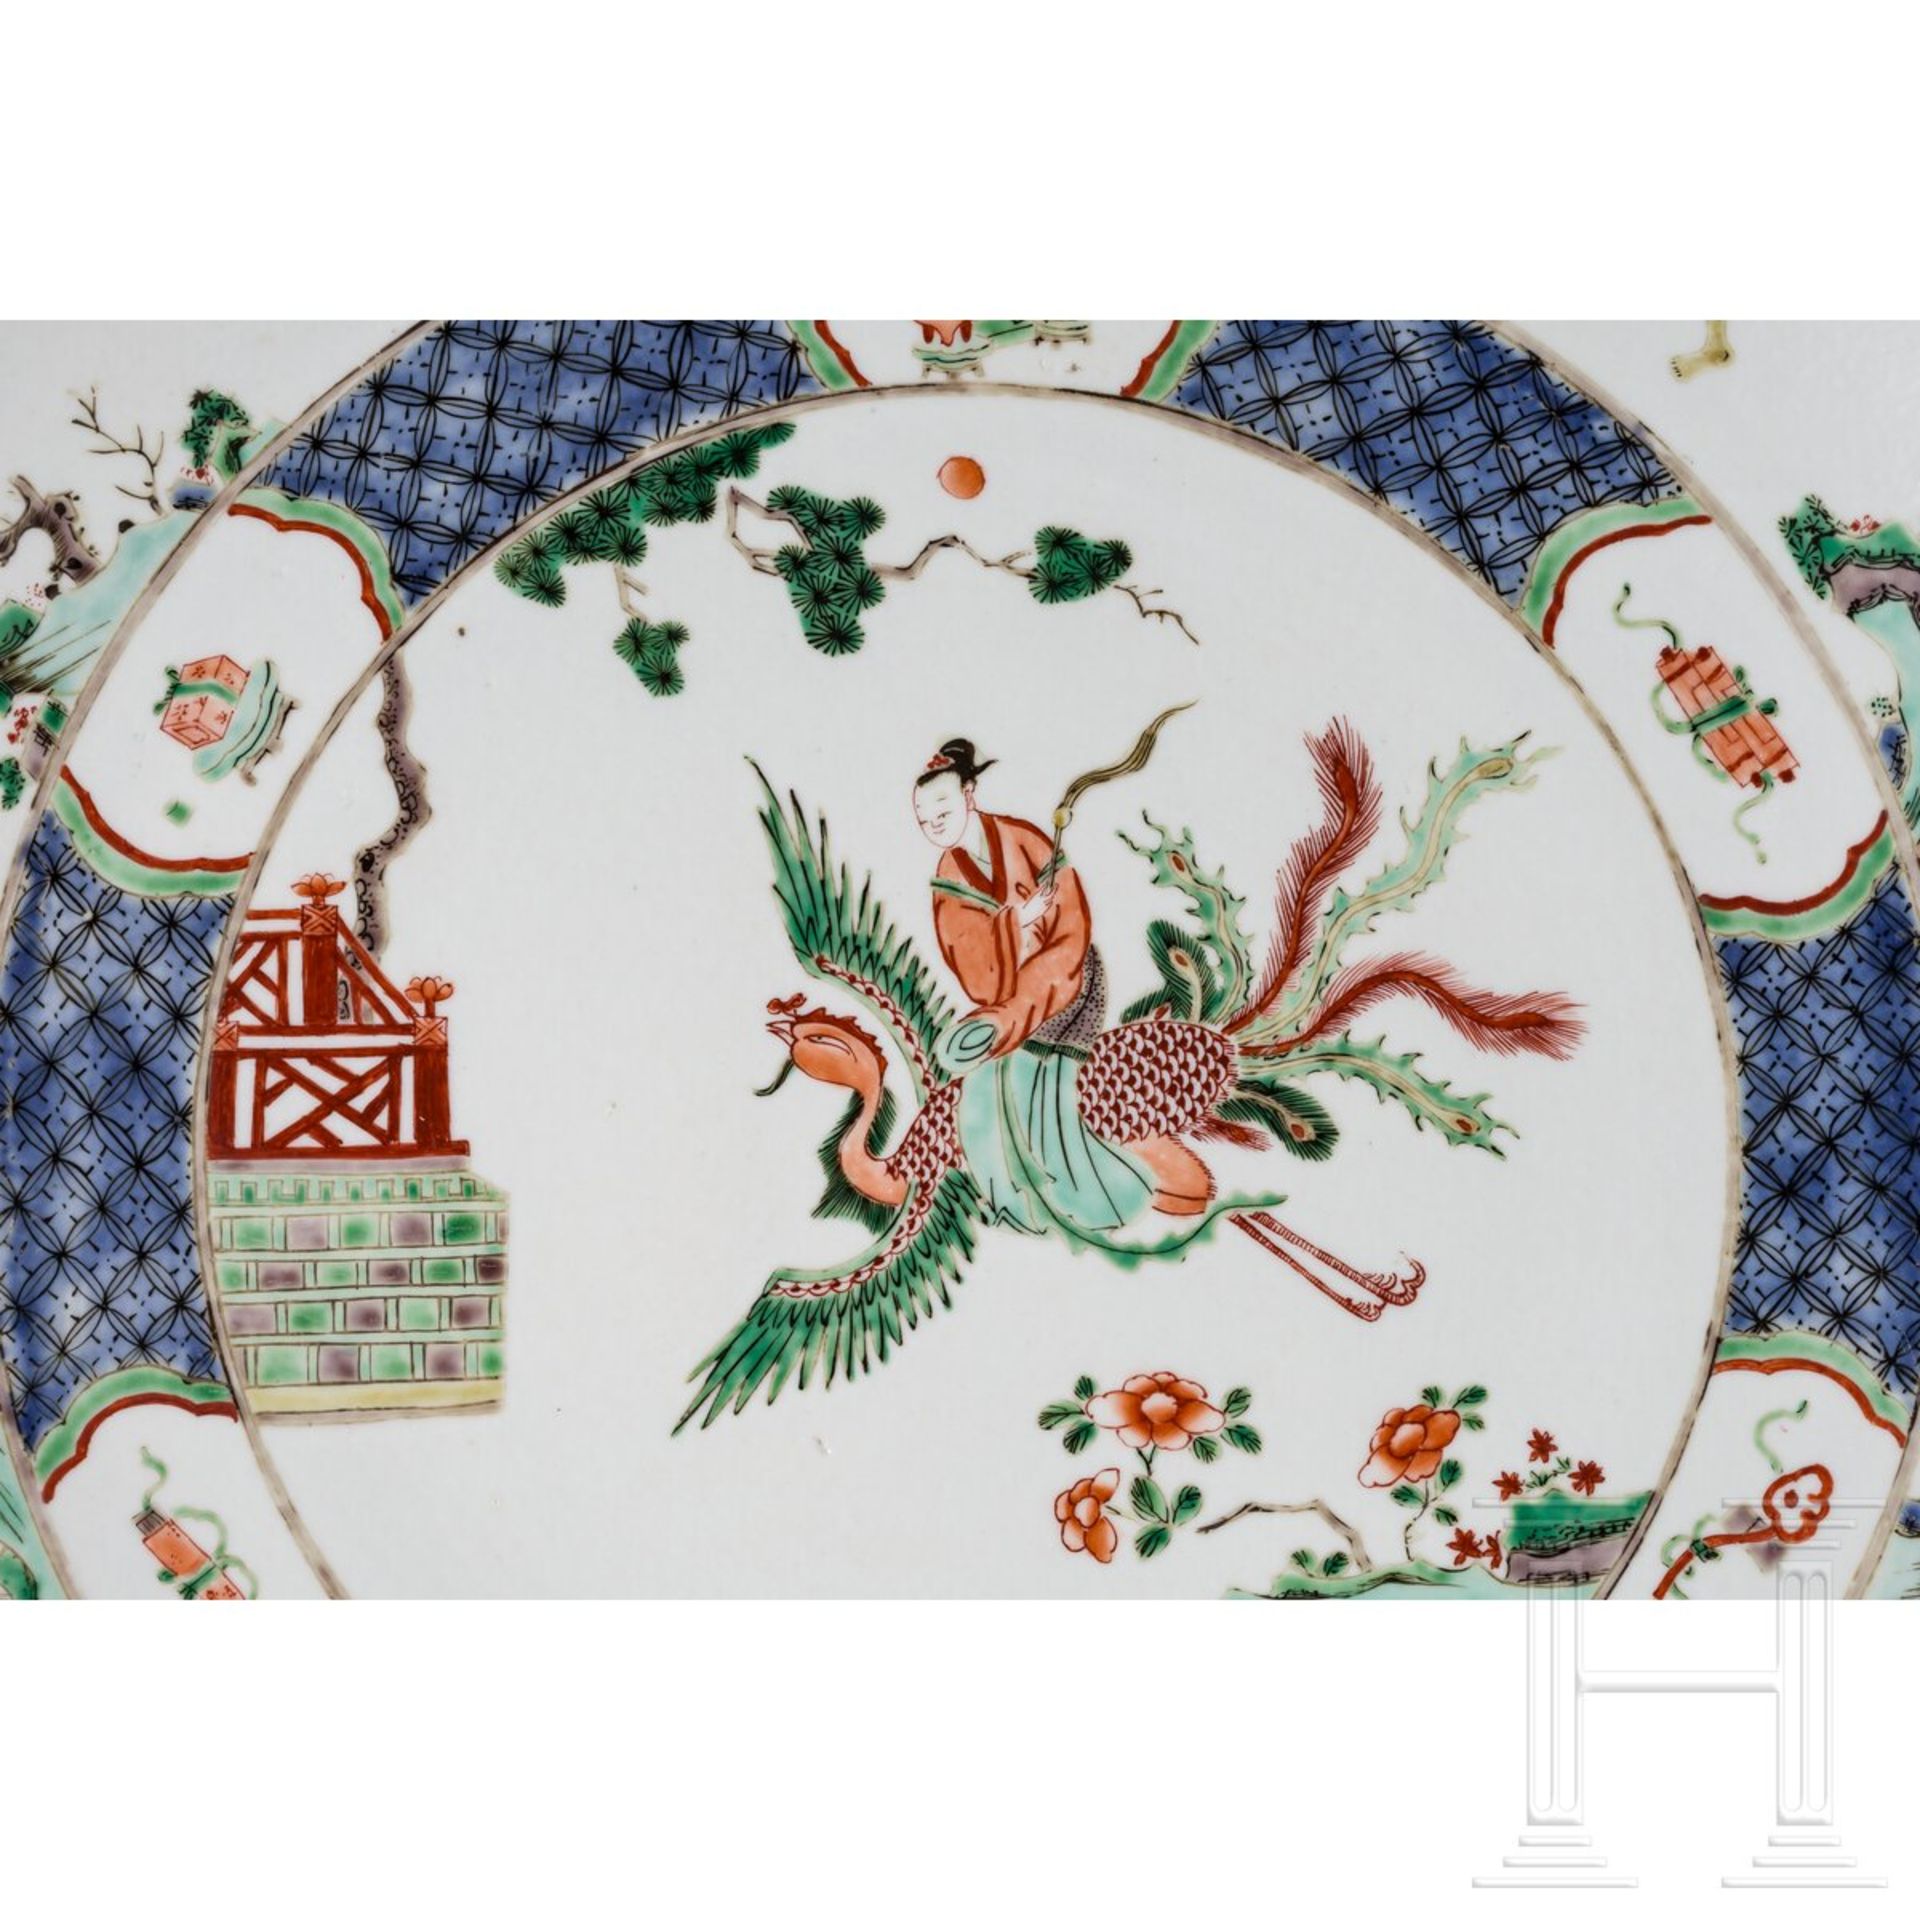 Zwei große Famille-verte-Teller mit figürlichem Dekor, China, wohl Kangxi-Periode (18. Jhdt.) - Bild 4 aus 41